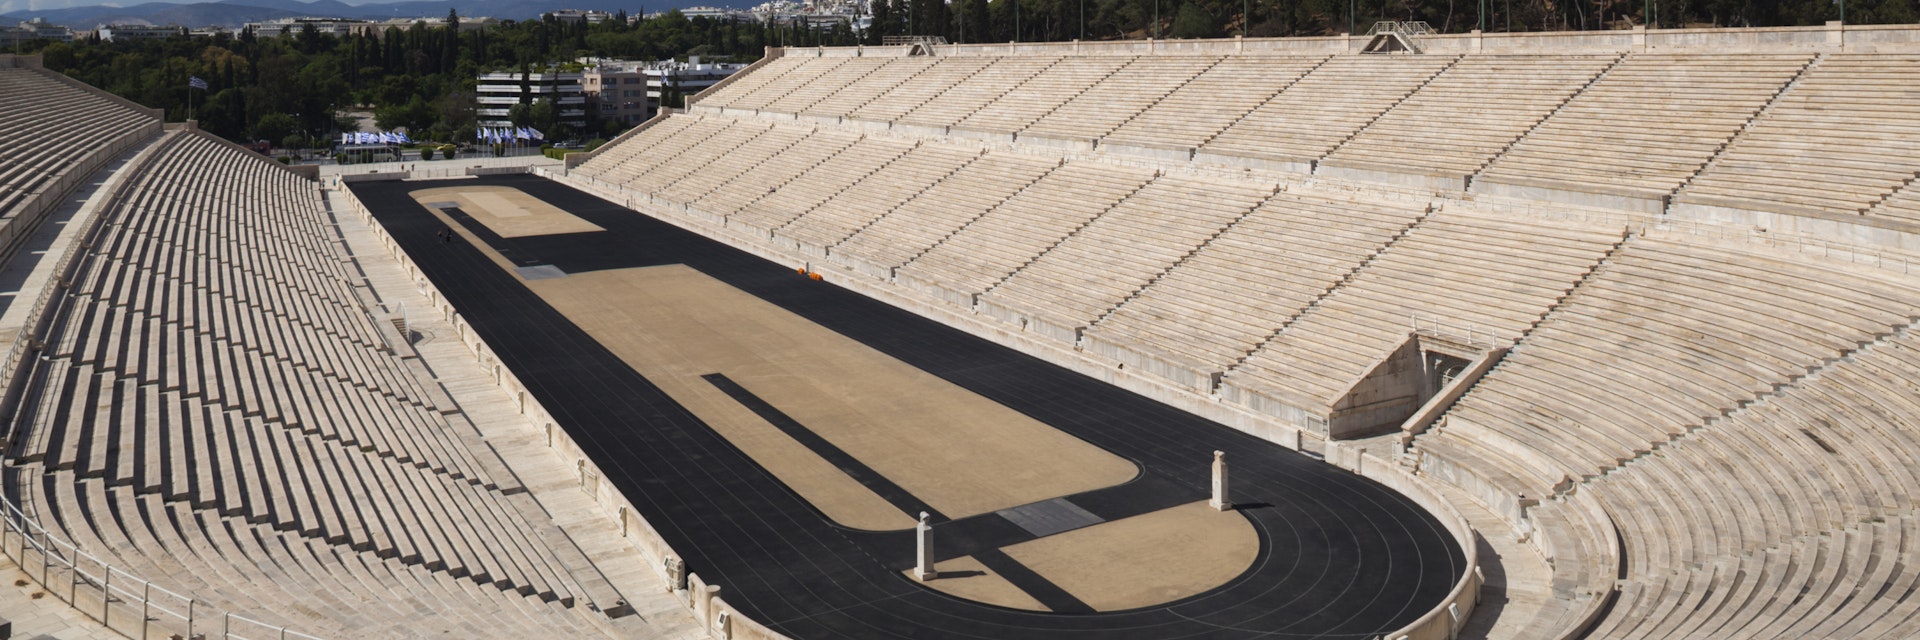 Greece, Athens, Panathenaic Stadium